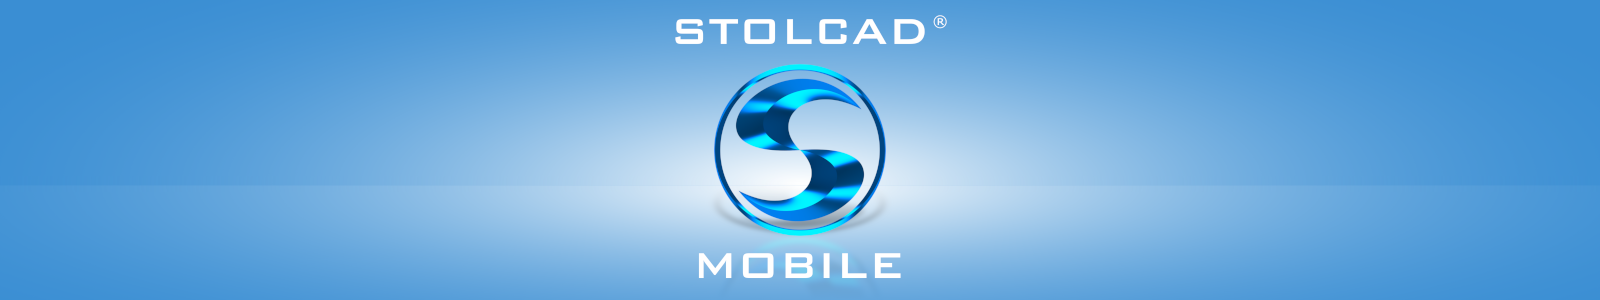 Stolcad Mobile - aplicație de calcul al prețului ferestrelor